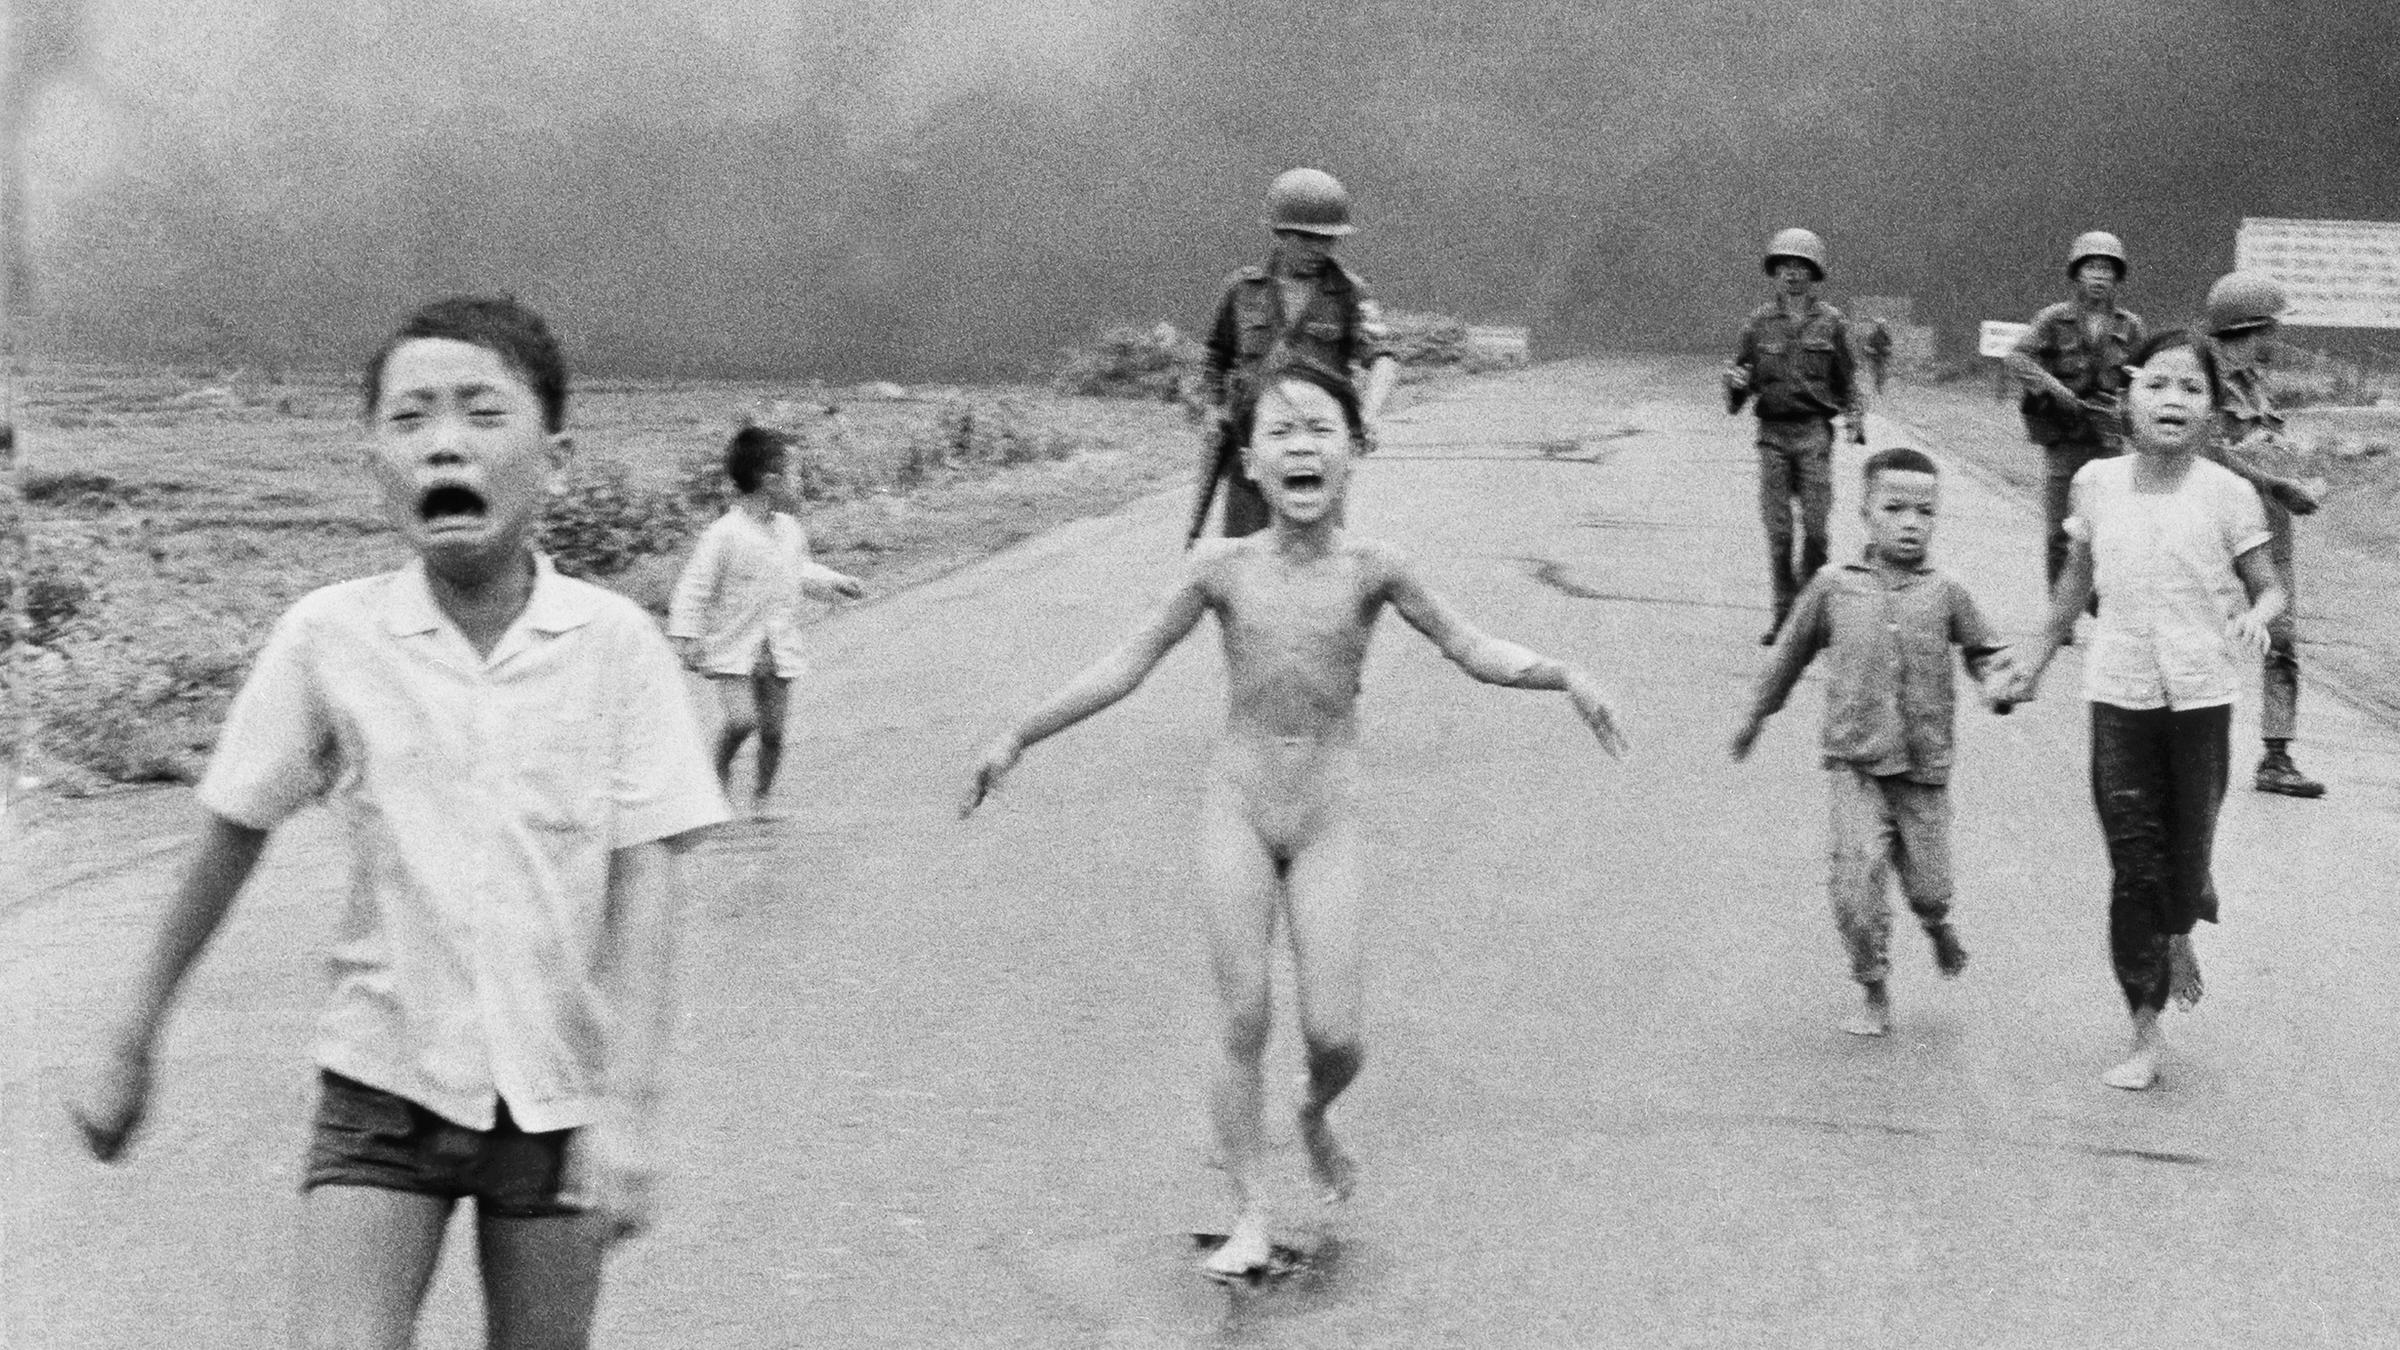 08.06.1972, Vietnam, Trang Bang: Die neunjährige Kim Phuc Phan Thi (M) flieht nackt mit ihren Brüdern und Cousins vor einem Napalm-Angriff.